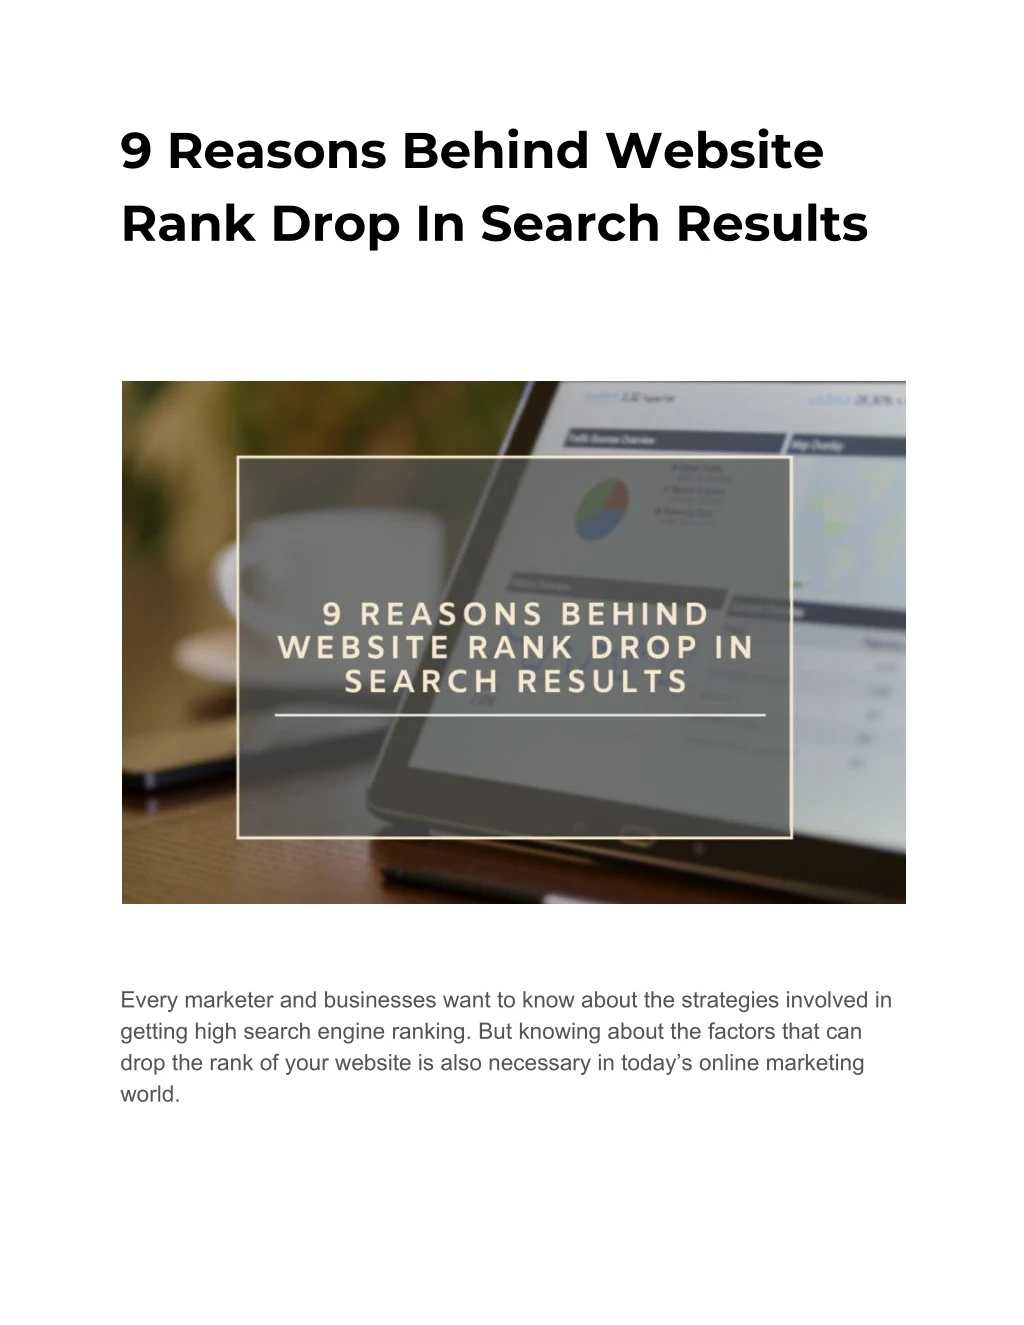 9 reasons behind website rank drop in search